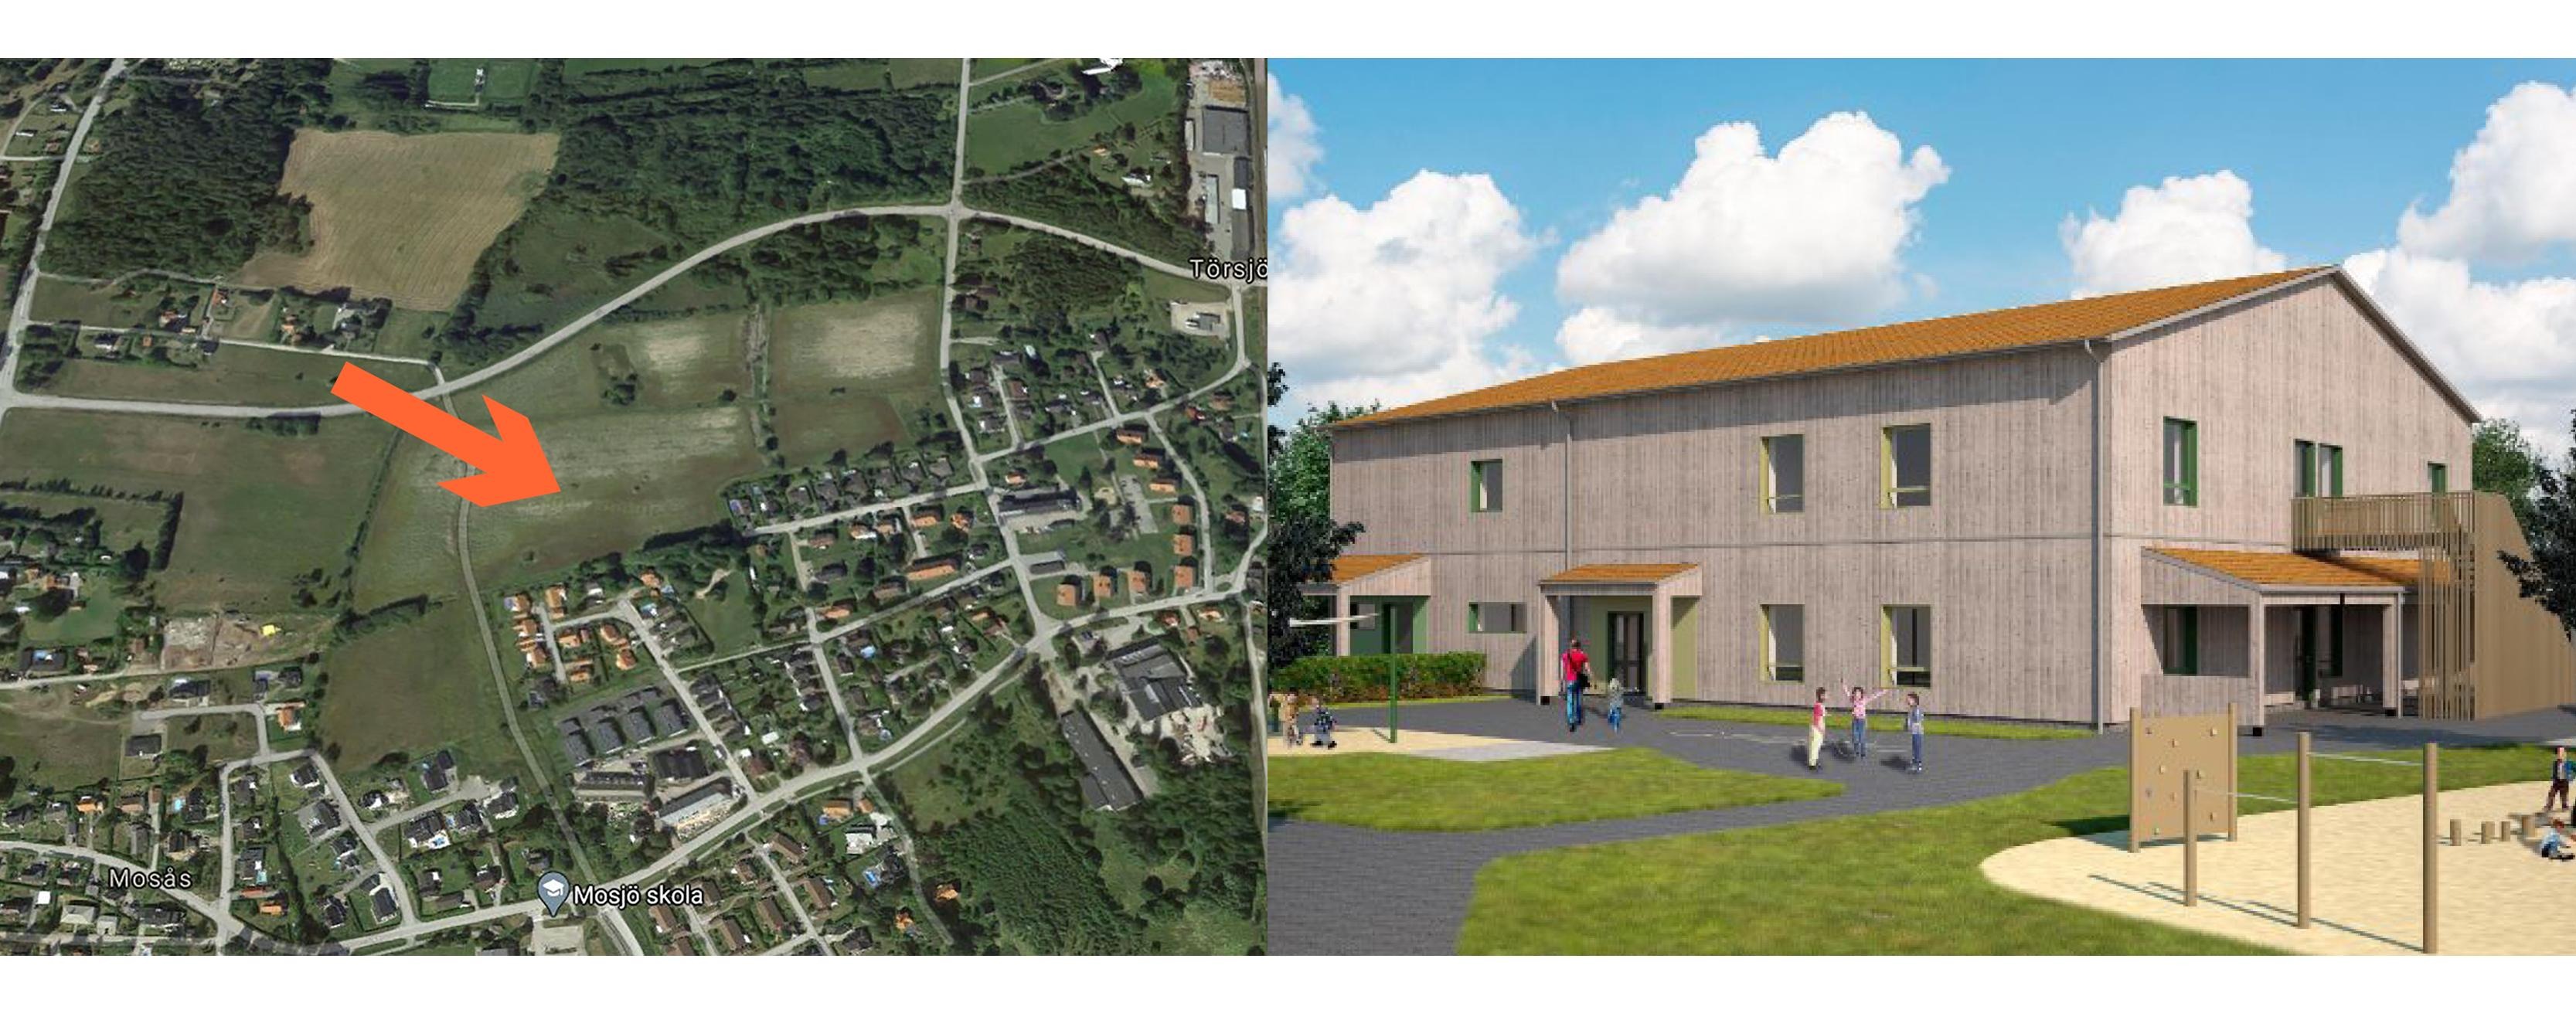 Två bilder i en; en karta med en pil som visar var byggnaden ska ligga samt en skiss på en förskola i två våningar byggd i trä. 